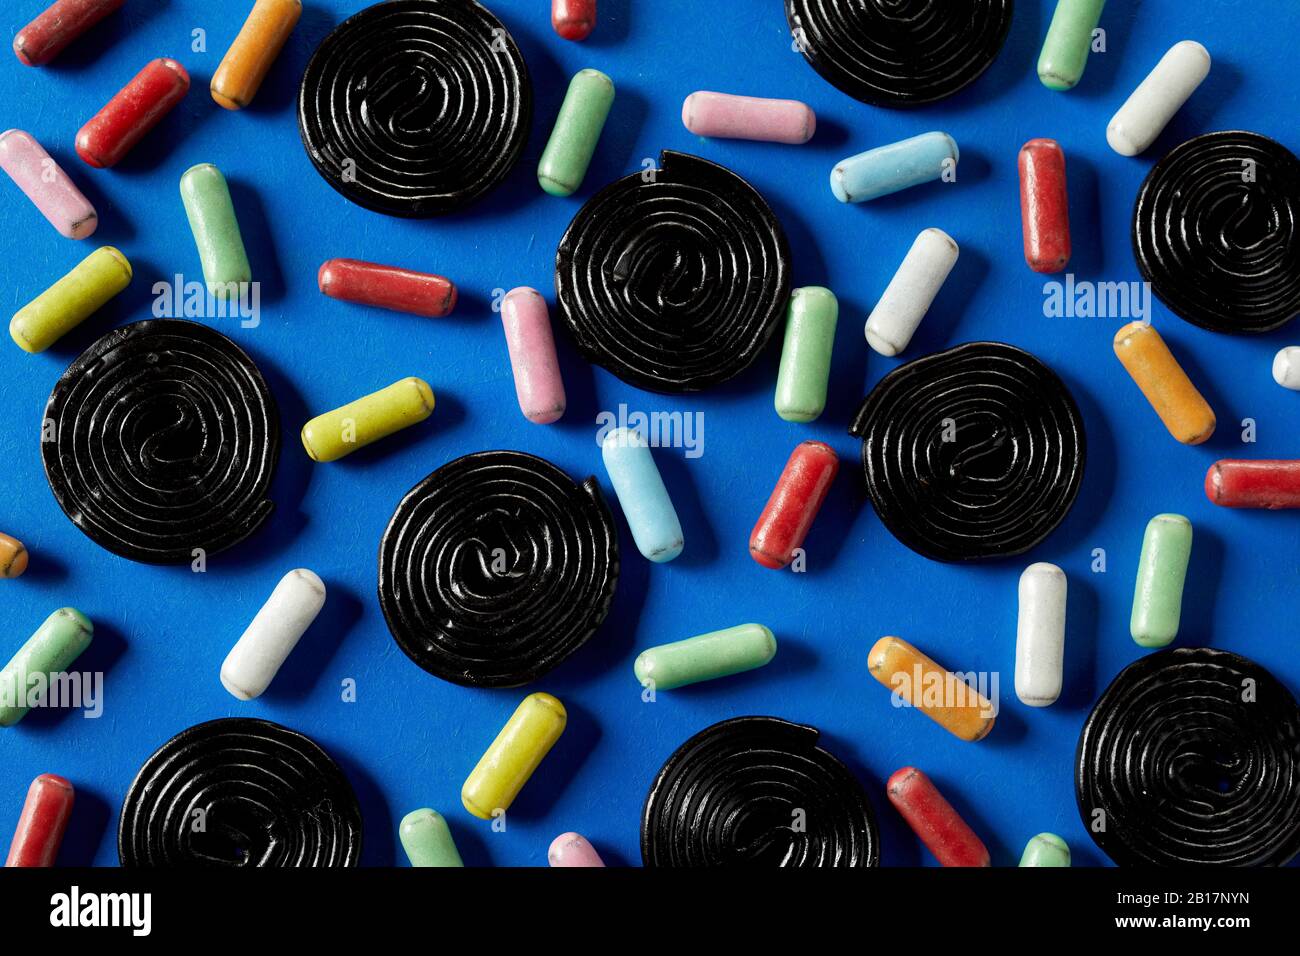 Ruote a spirale di caramella di liquirizia su blu inframmezzato con zucchero di liquirizia rivestito nei colori dell'arcobaleno Foto Stock